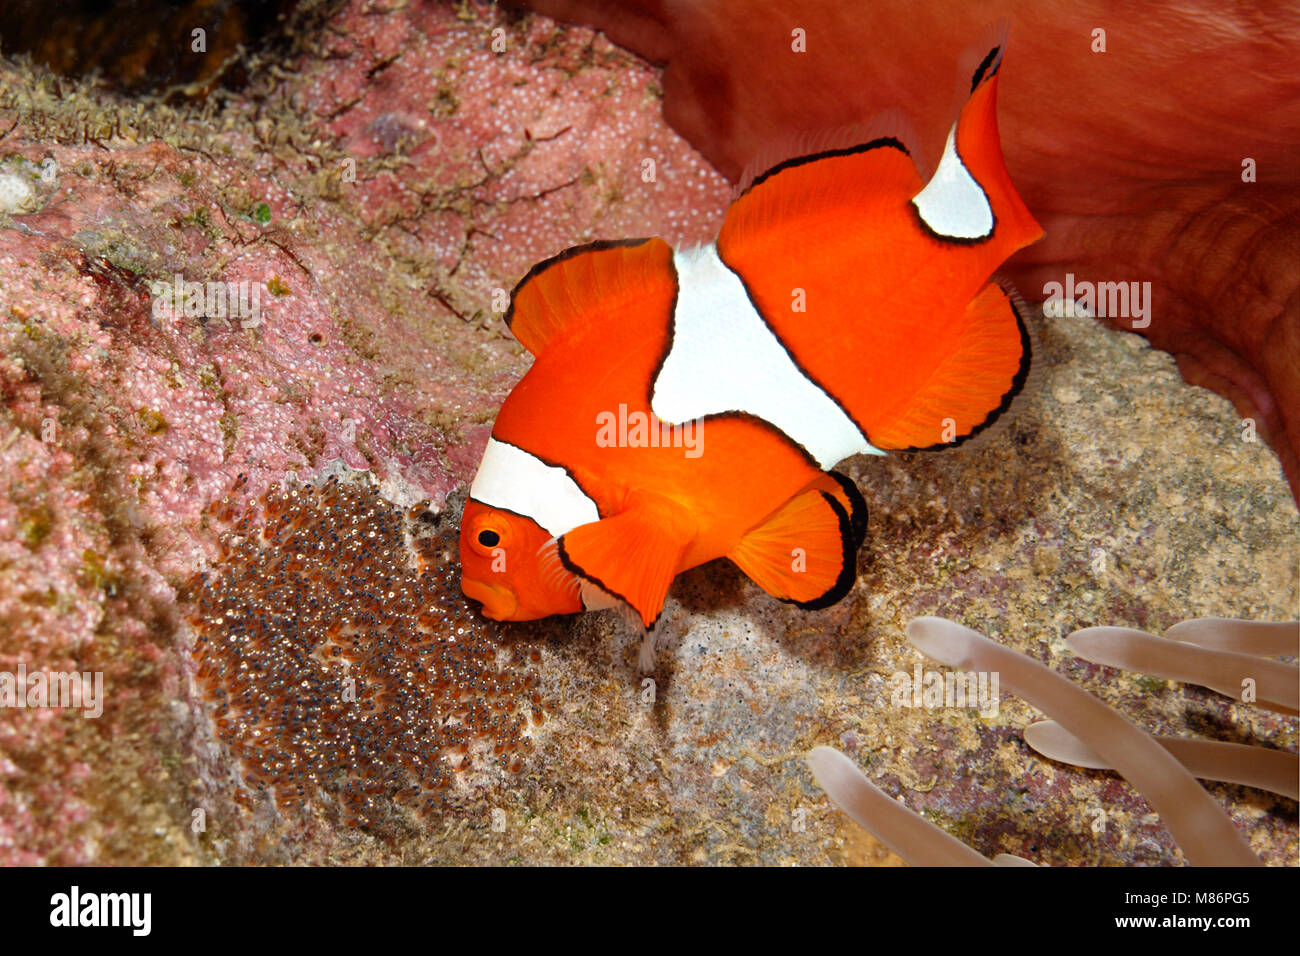 Clownfish, Amphiprion percula, pesci maschi aerare uova deposte deselezionata sottostante substrato l'ospite magnifico mare Anemone, Heteractis magnifica Foto Stock